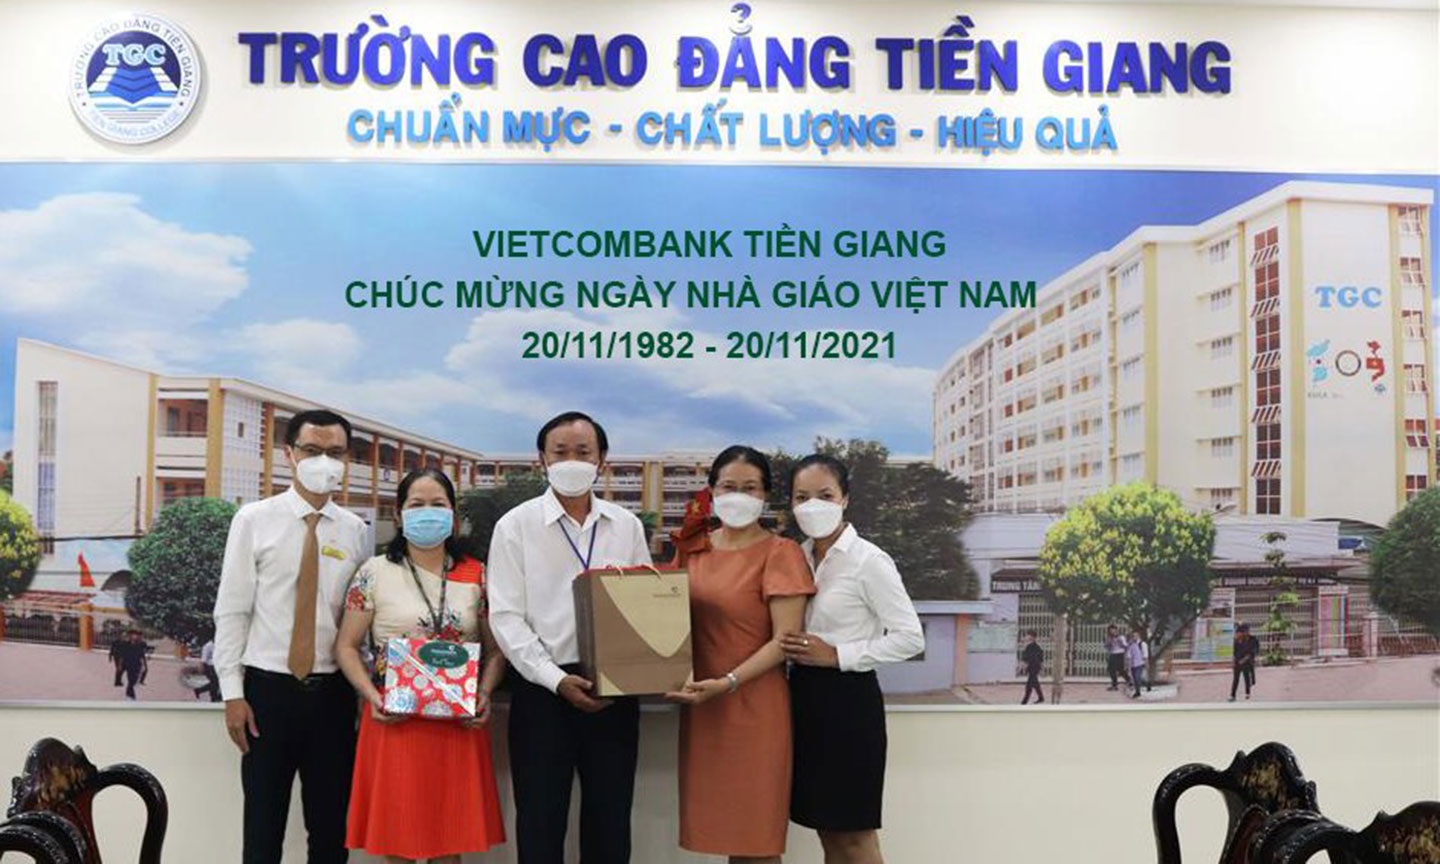 Bà Nguyễn Thị Tuyết – Giám đốc Vietcombank Tiền Giang (thứ 2 từ phải qua) chúc mừng ngày Nhà giáo Việt Nam tại trường Cao Đẳng Tiền Giang